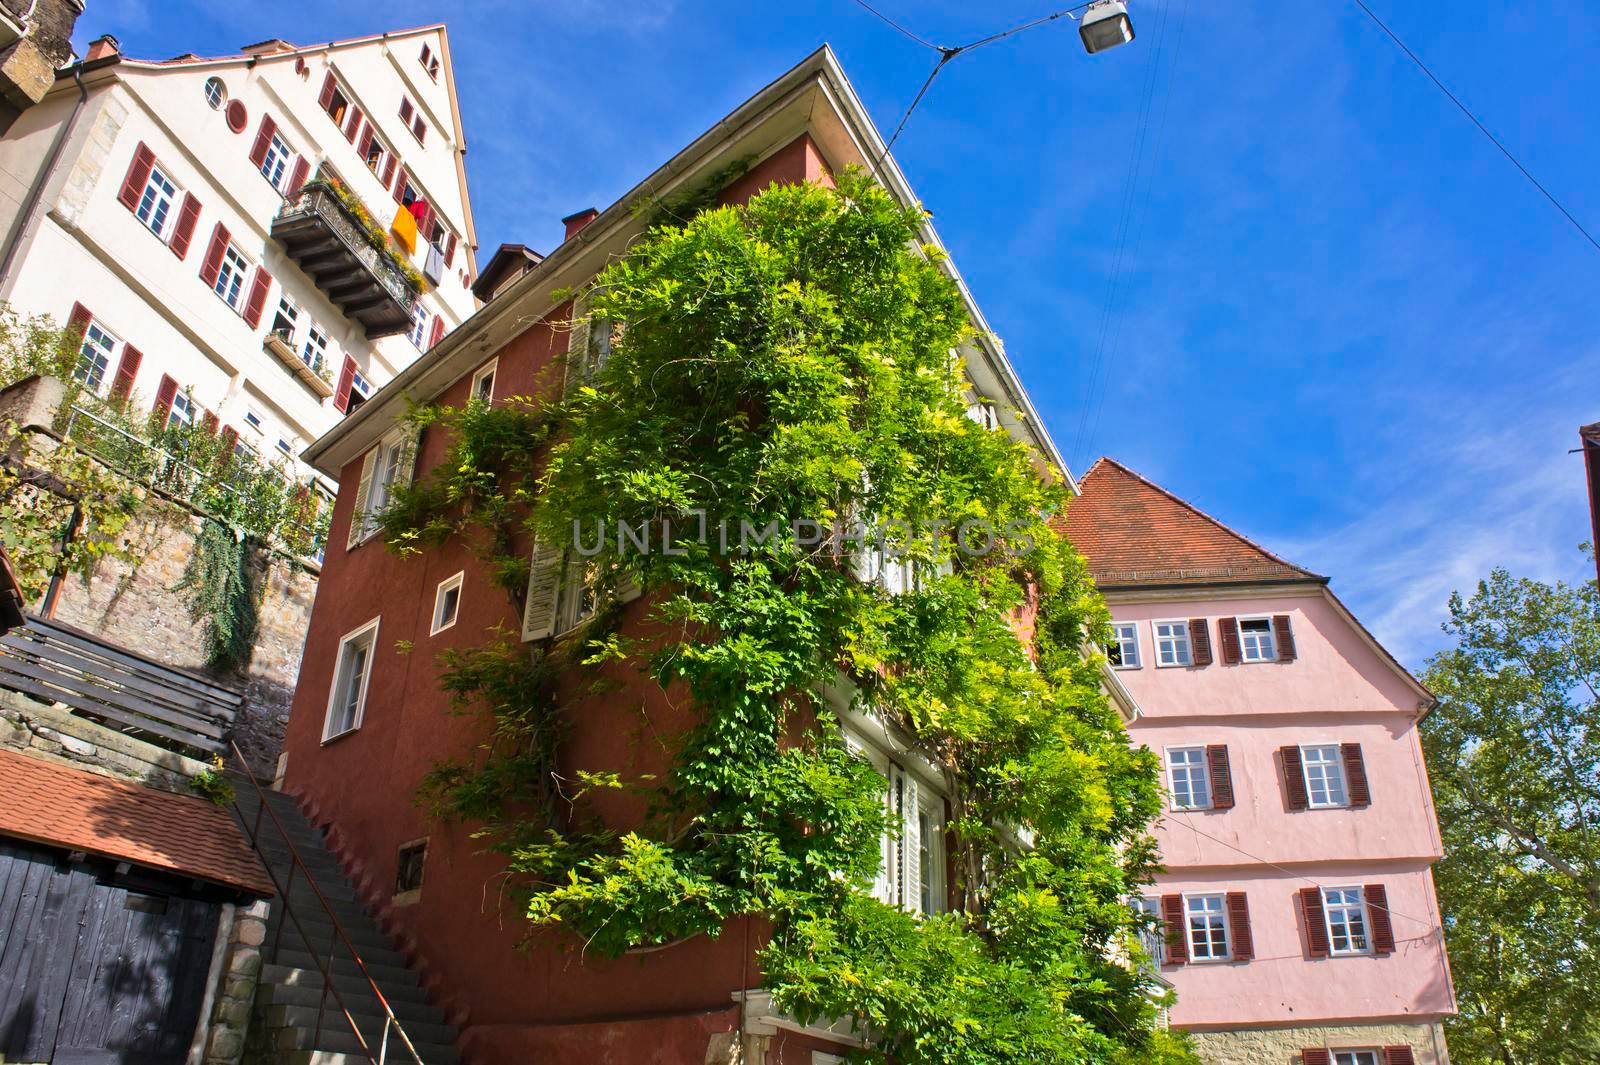 Tübingen, Old city street view, Germany by giannakisphoto